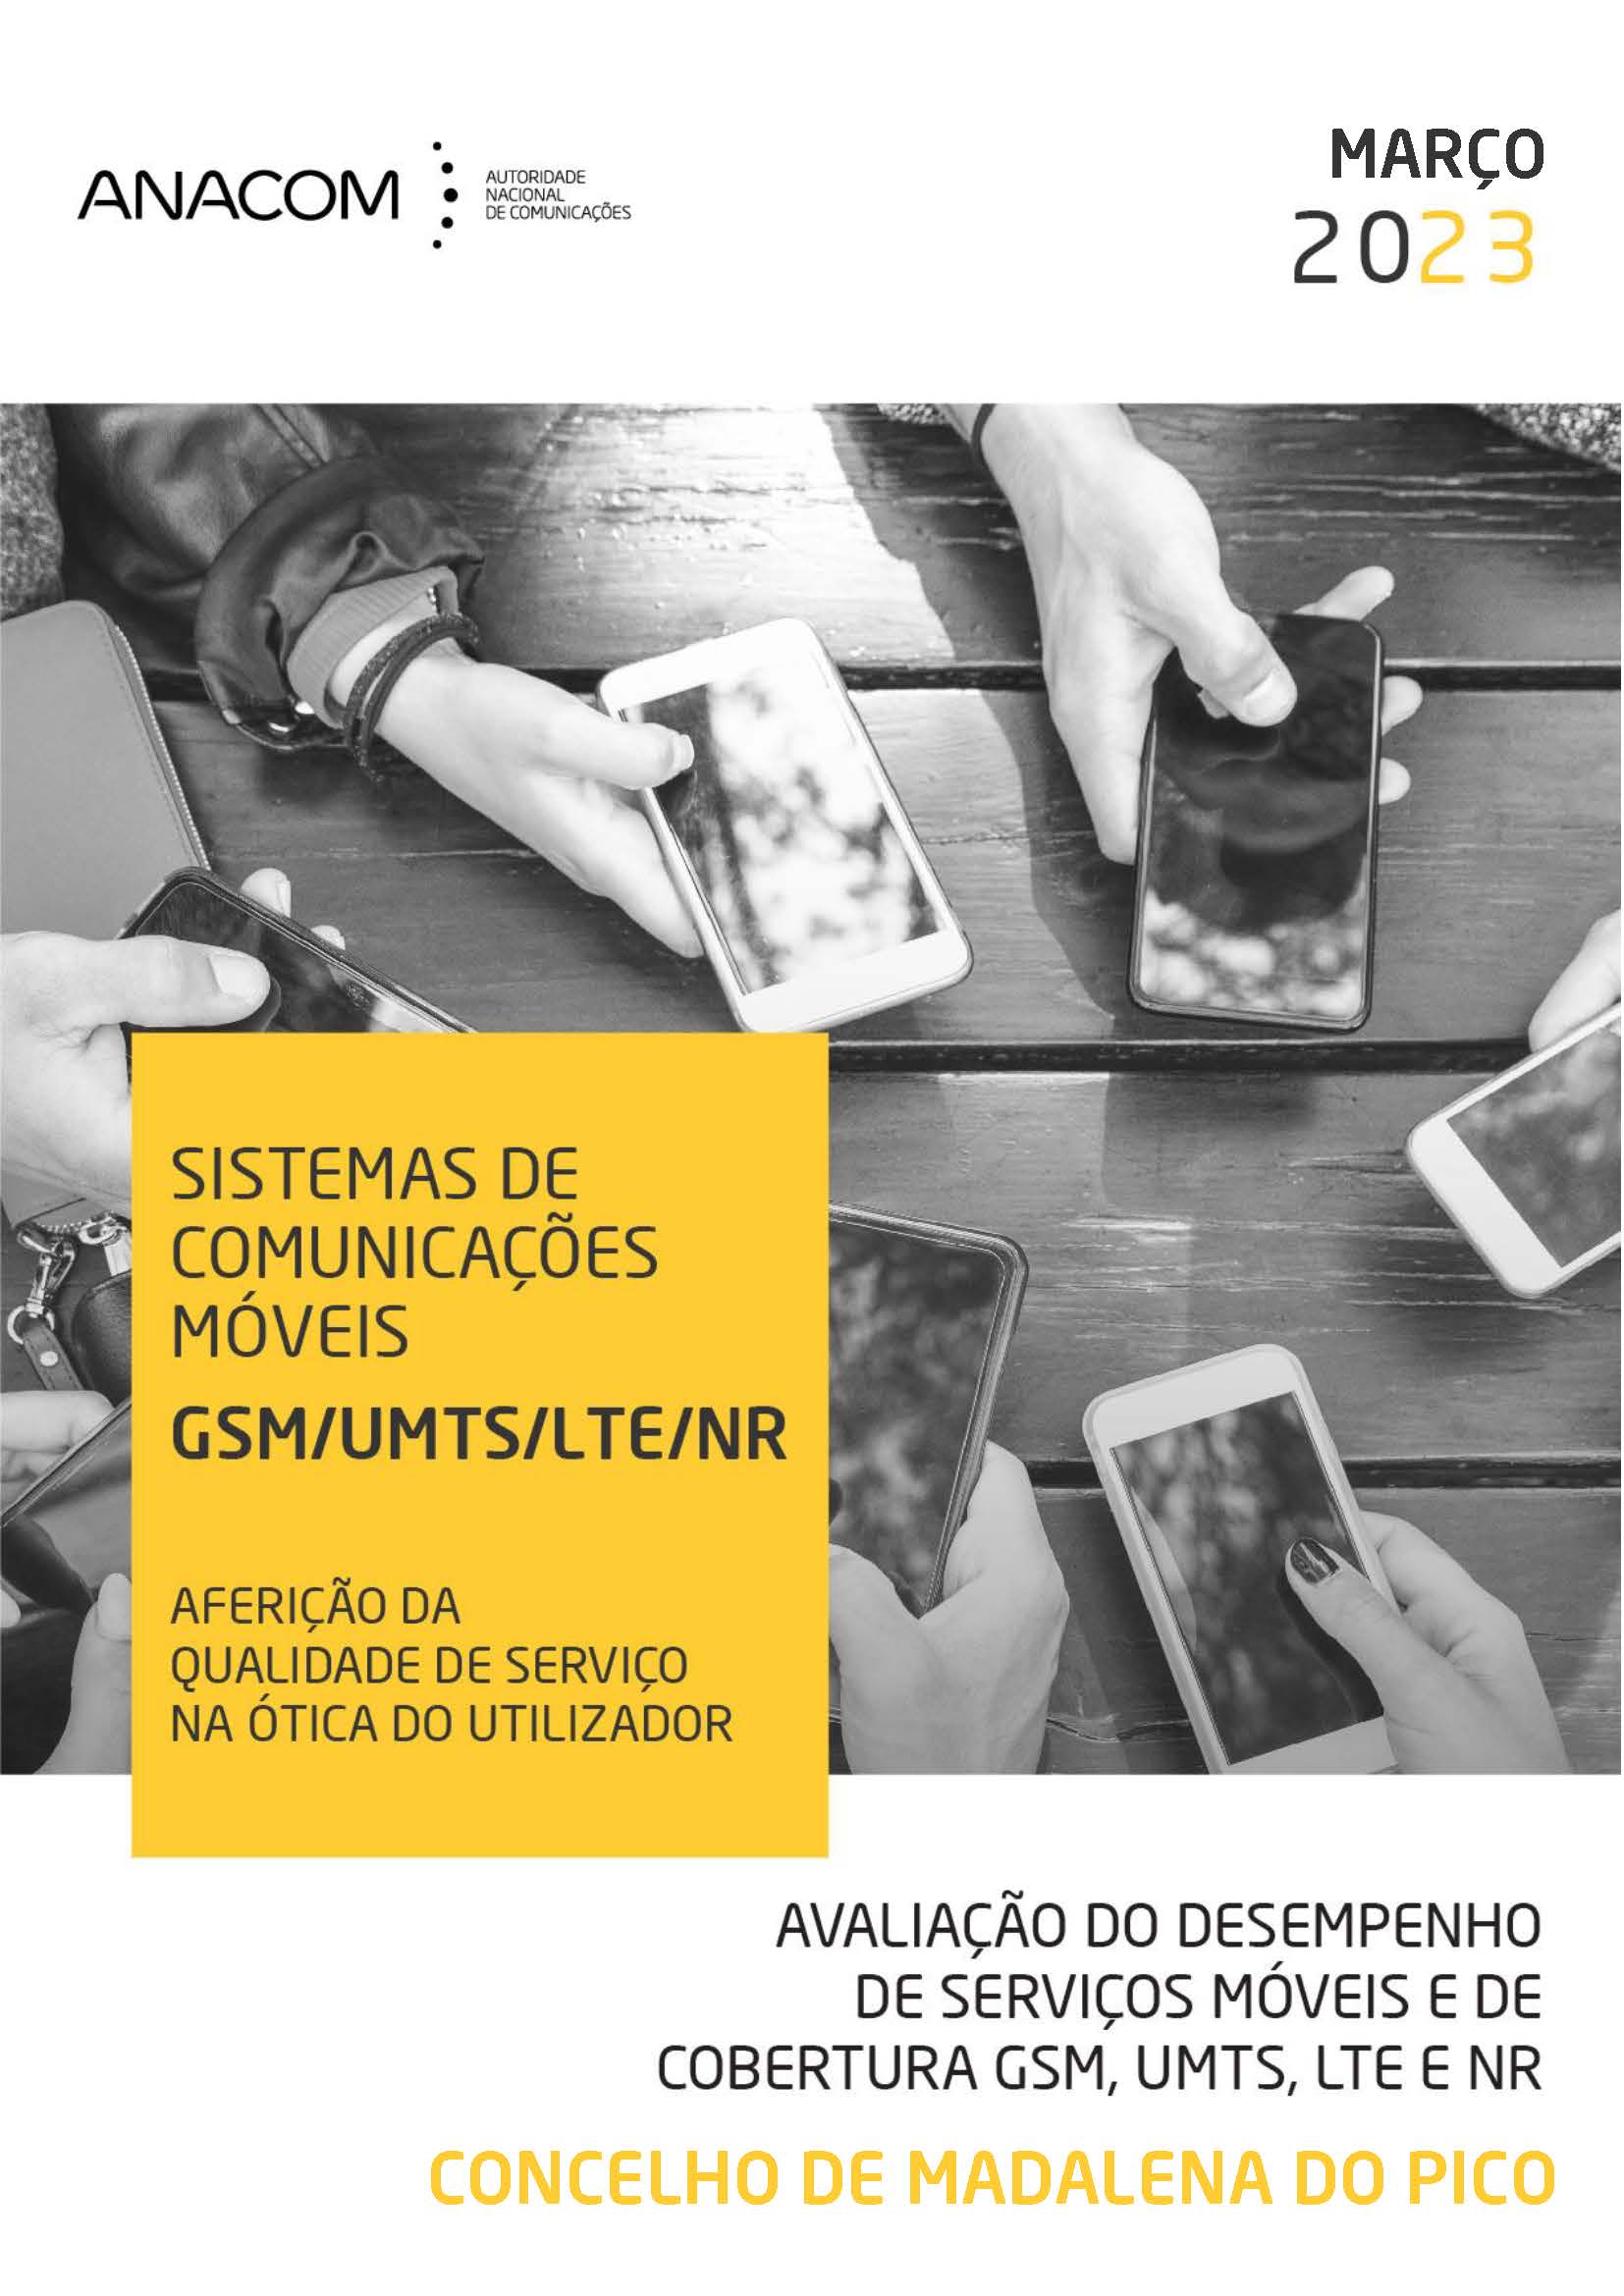 Avaliação do desempenho de serviços móveis e de cobertura GSM, UMTS, LTE e NR no Concelho de Madalena do Pico (Açores)